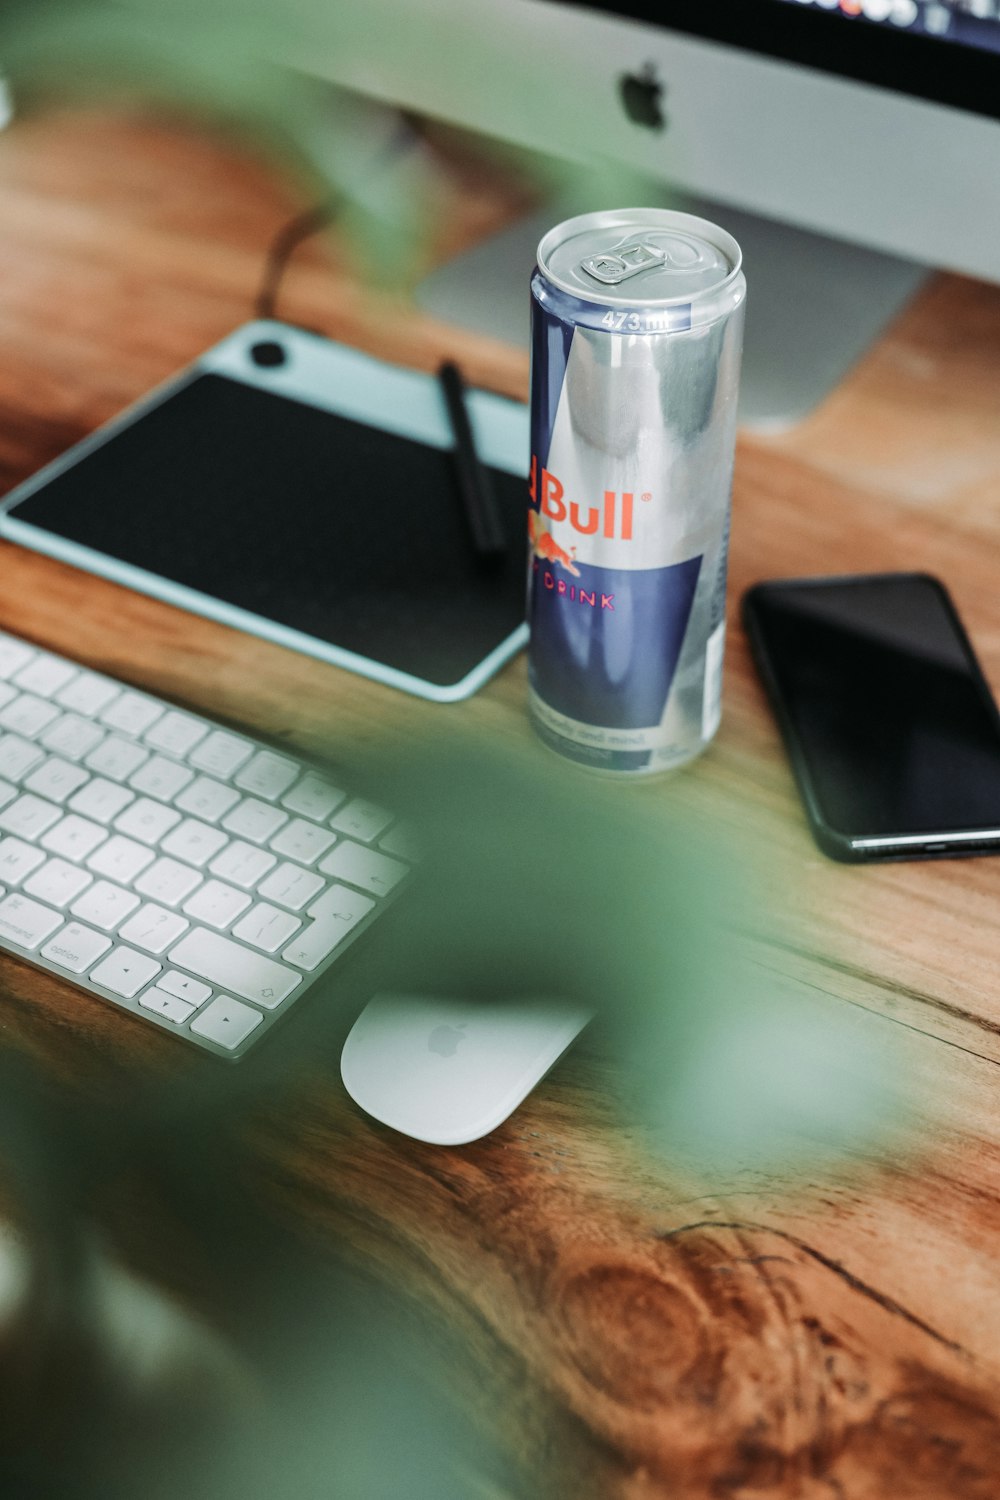 Red Bull peut se placer entre le smartphone et le bloc-notes sur la table  photo – Photo Red Bull Gratuite sur Unsplash